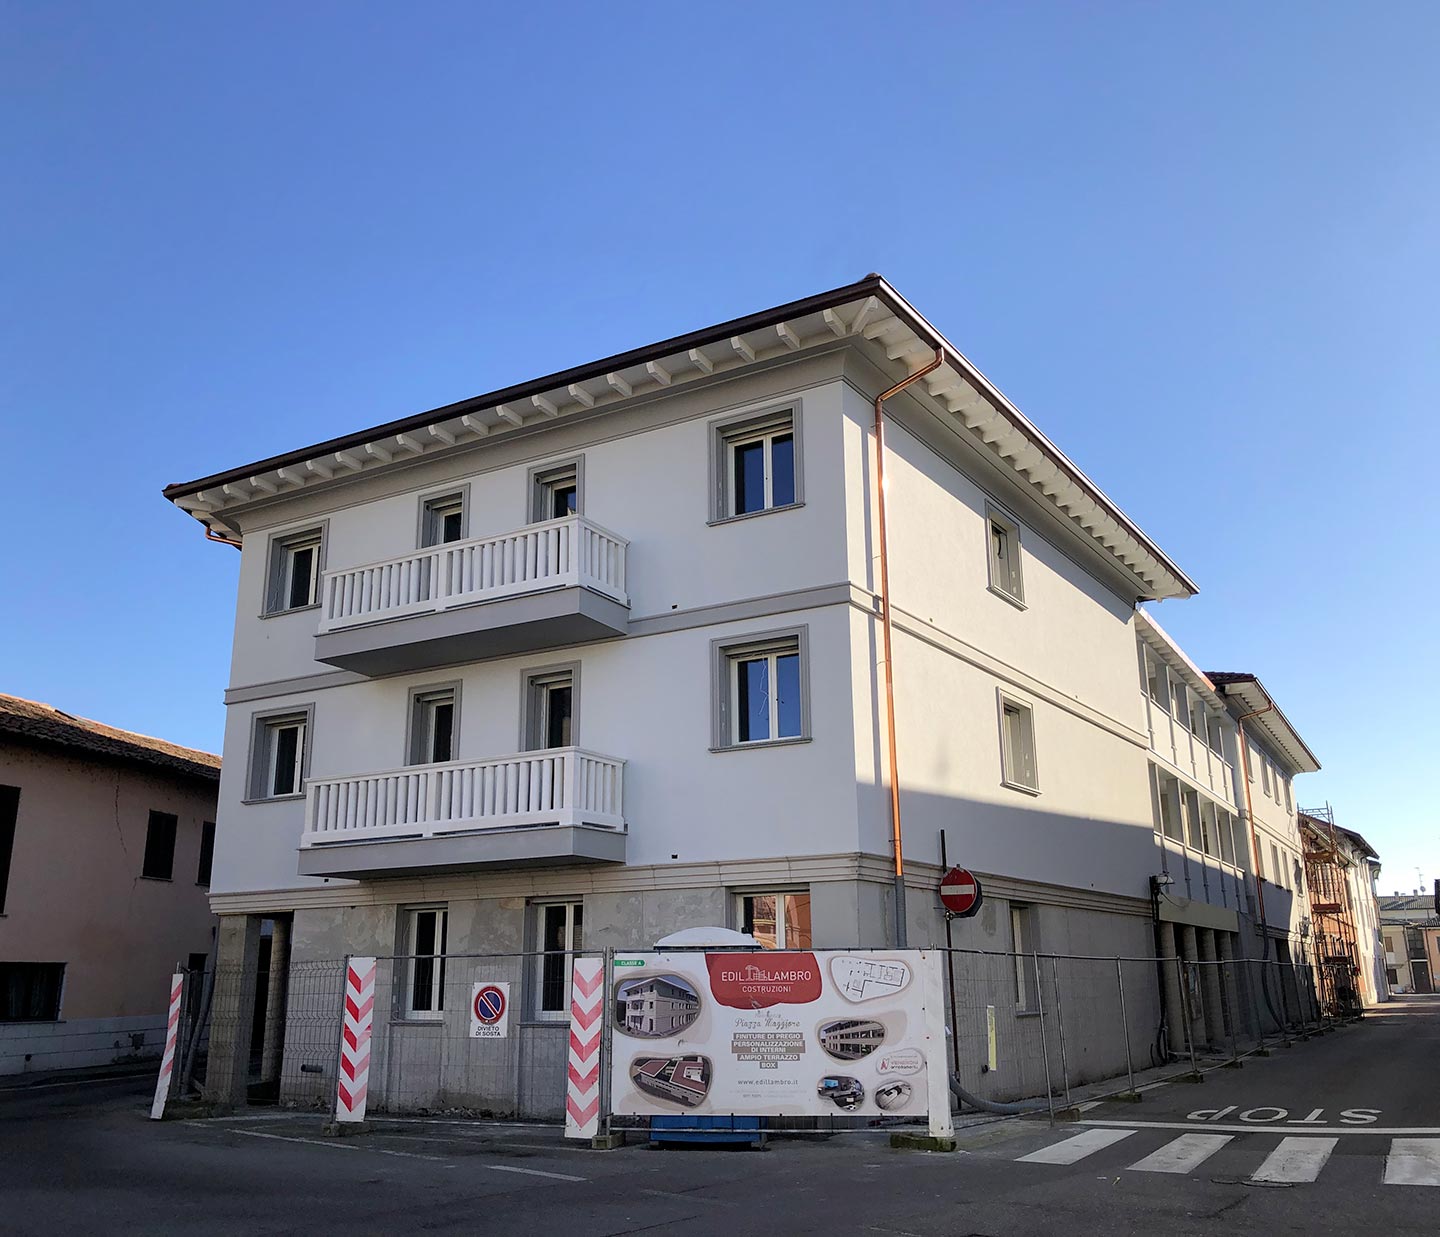 Residenza Piazza Maggiore a Salerano sul Lambro, comune in provincia di Lodi